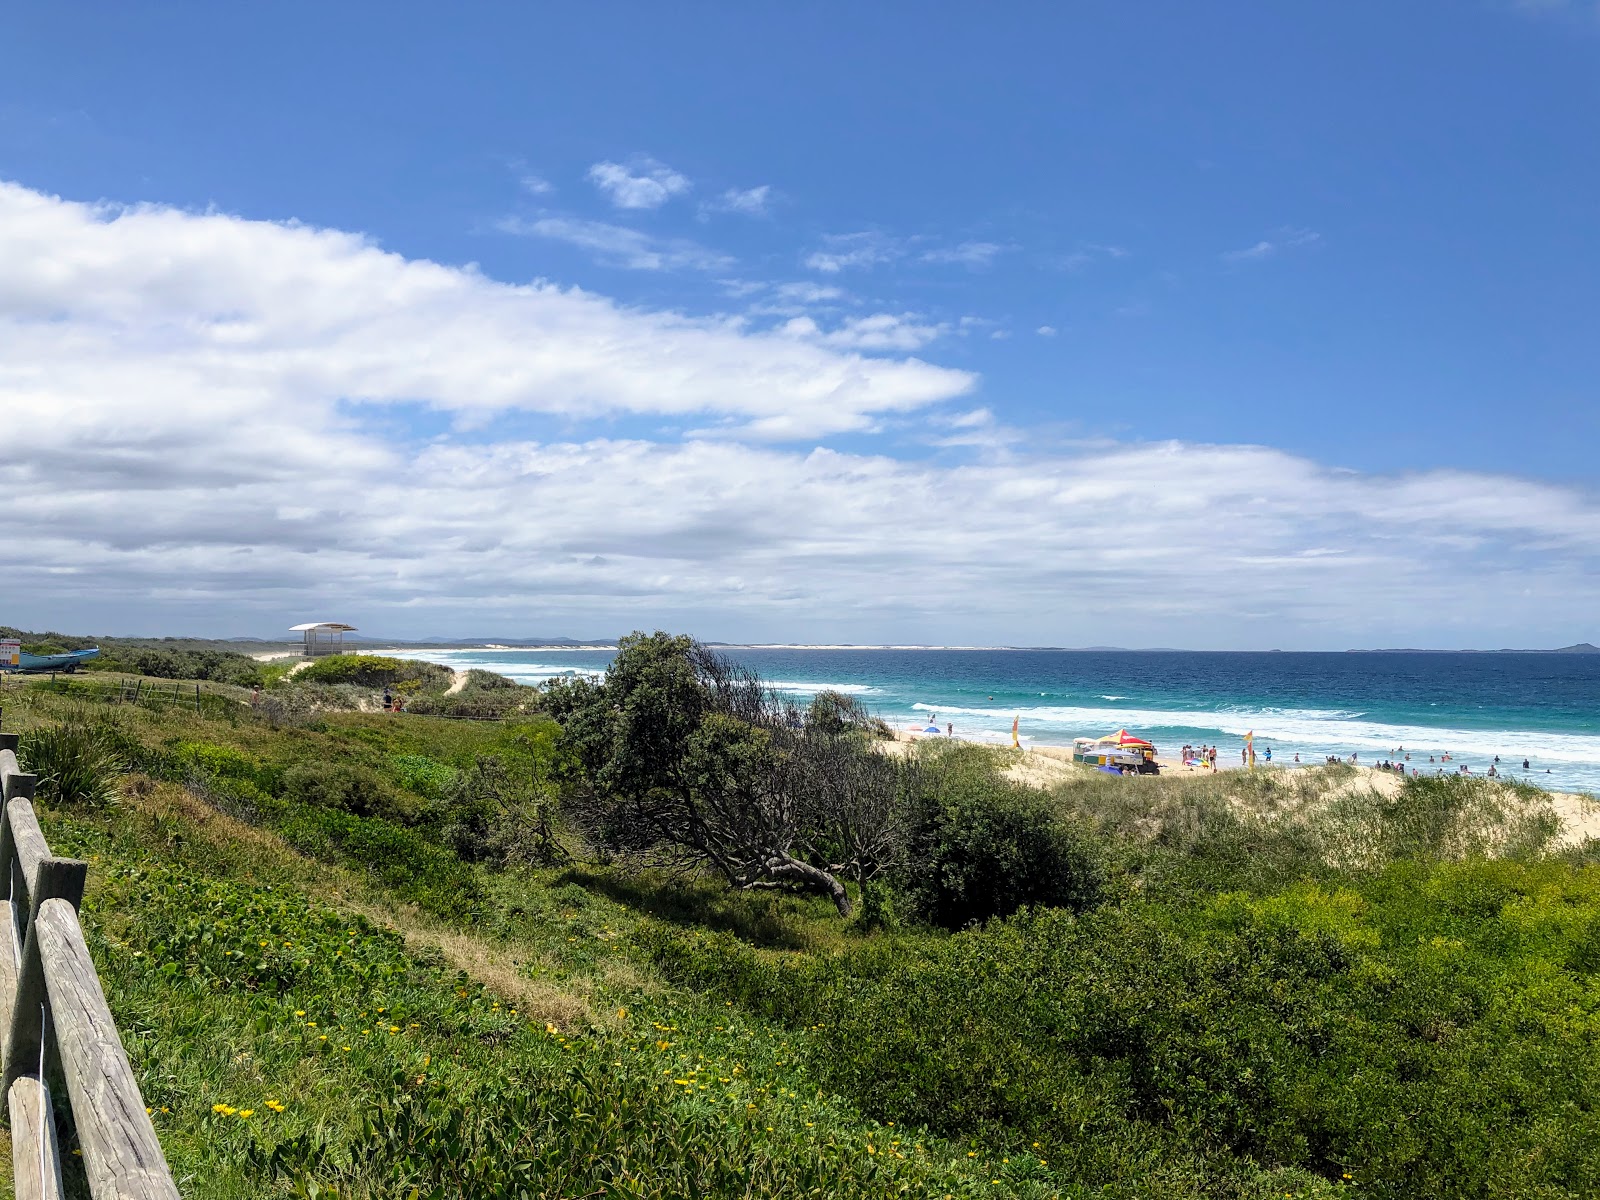 Photo de Wanderrabah Beach situé dans une zone naturelle